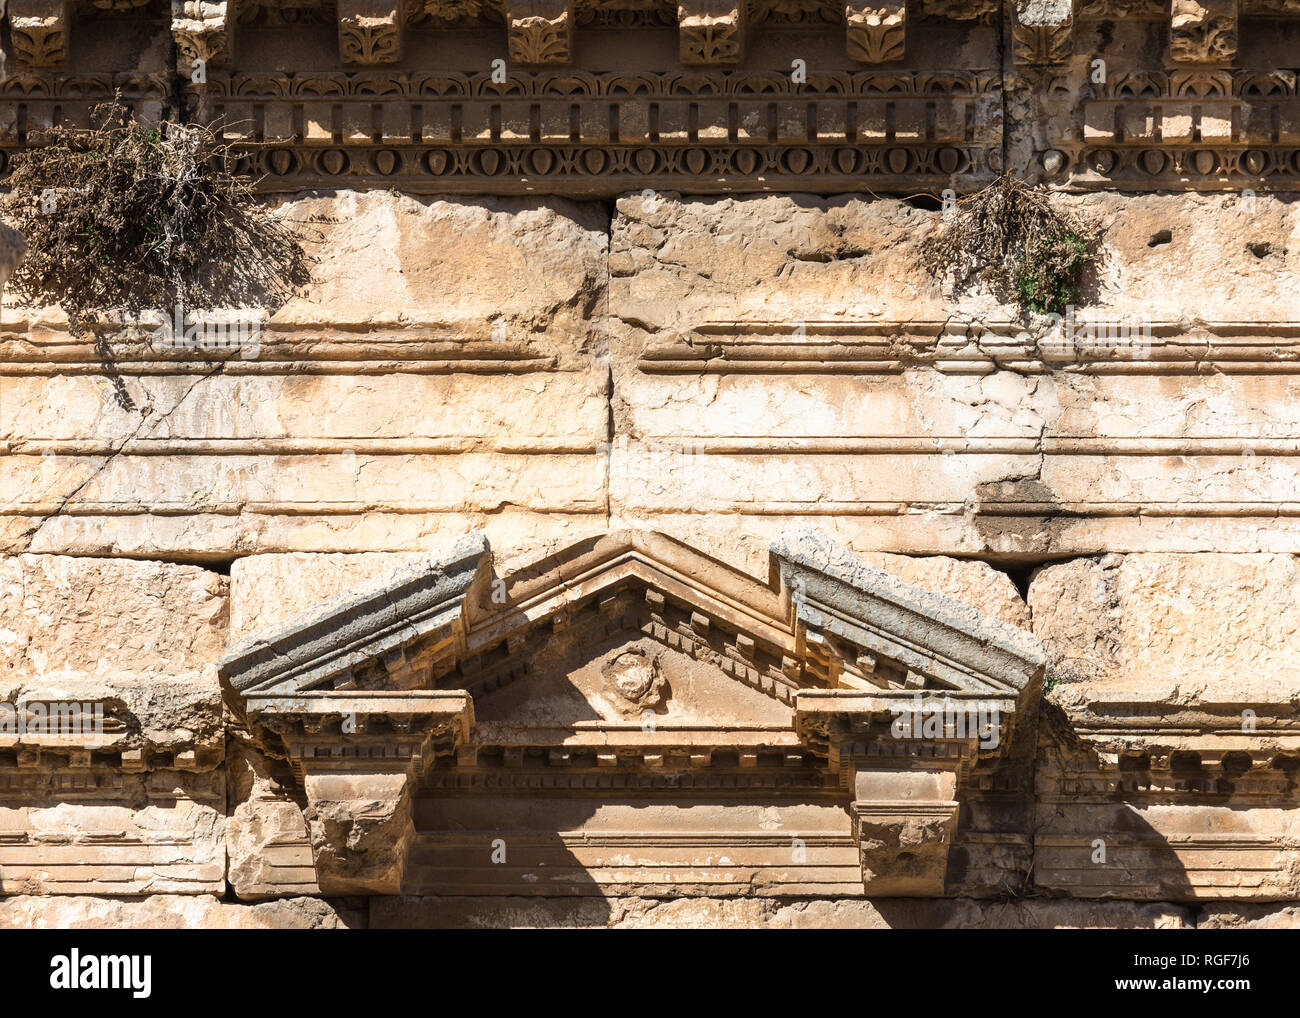 Dettagli architettonici del portico del Nord presso la Grande Corte, Heliopolis rovine romane, Baalbek, Libano Foto Stock